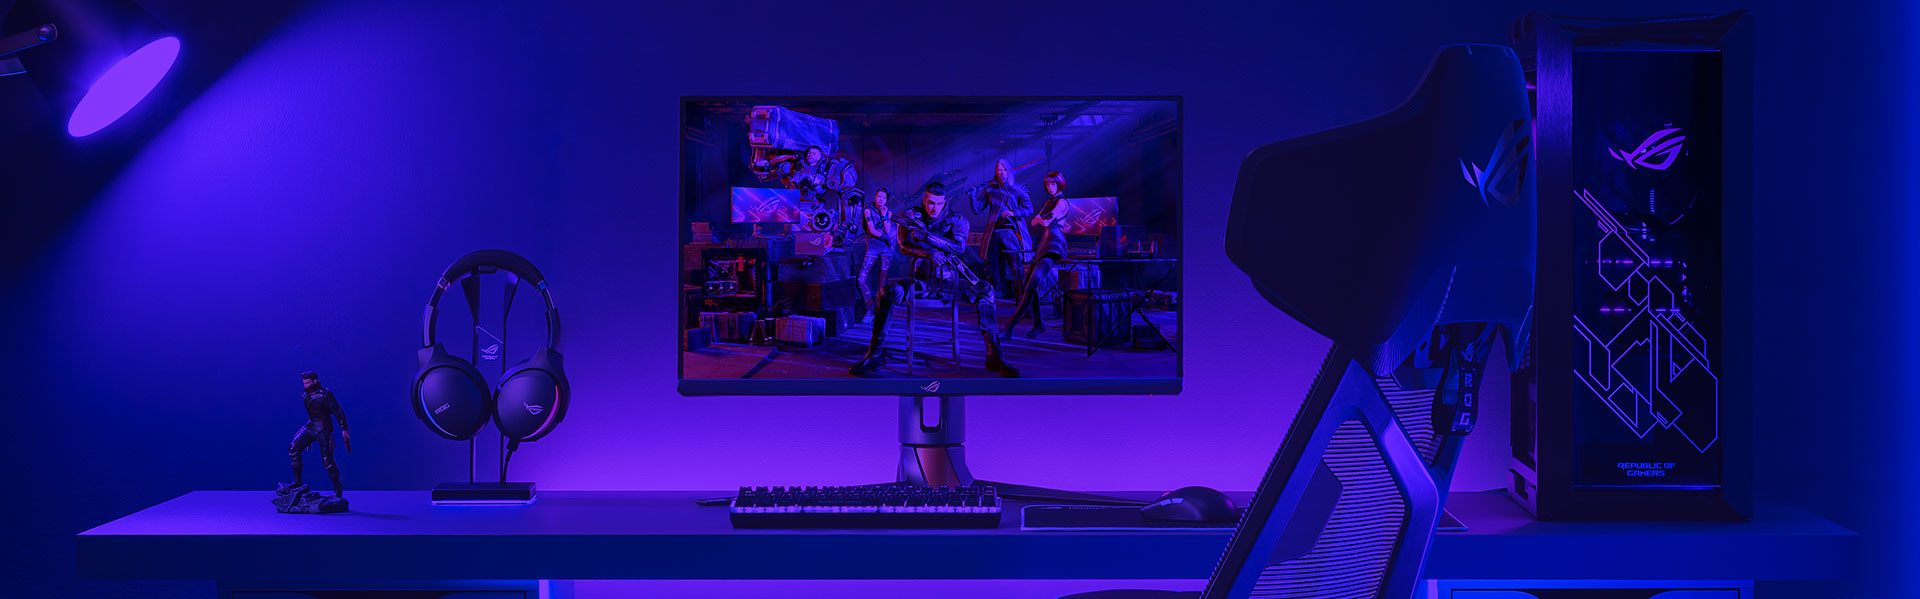 System gamingowy ROG z komputerem PC, monitorem, klawiaturą i myszką oraz zestawem słuchawkowym